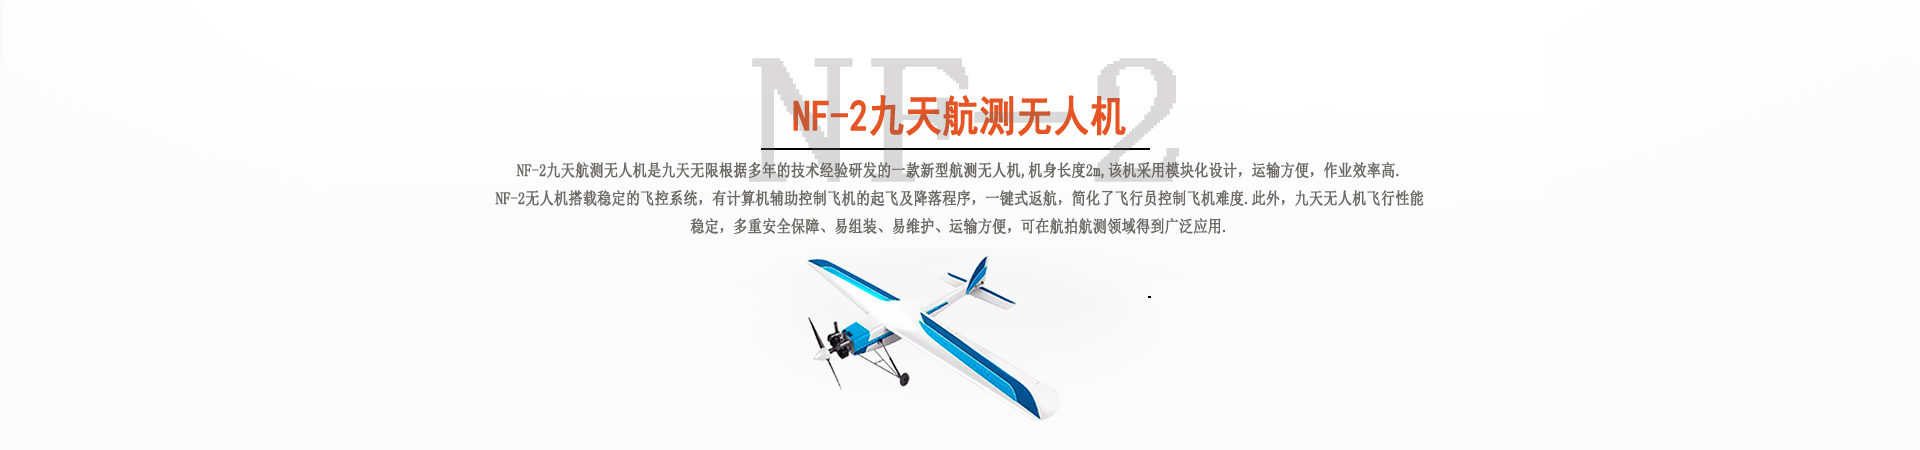 NF-2九天航测无人机